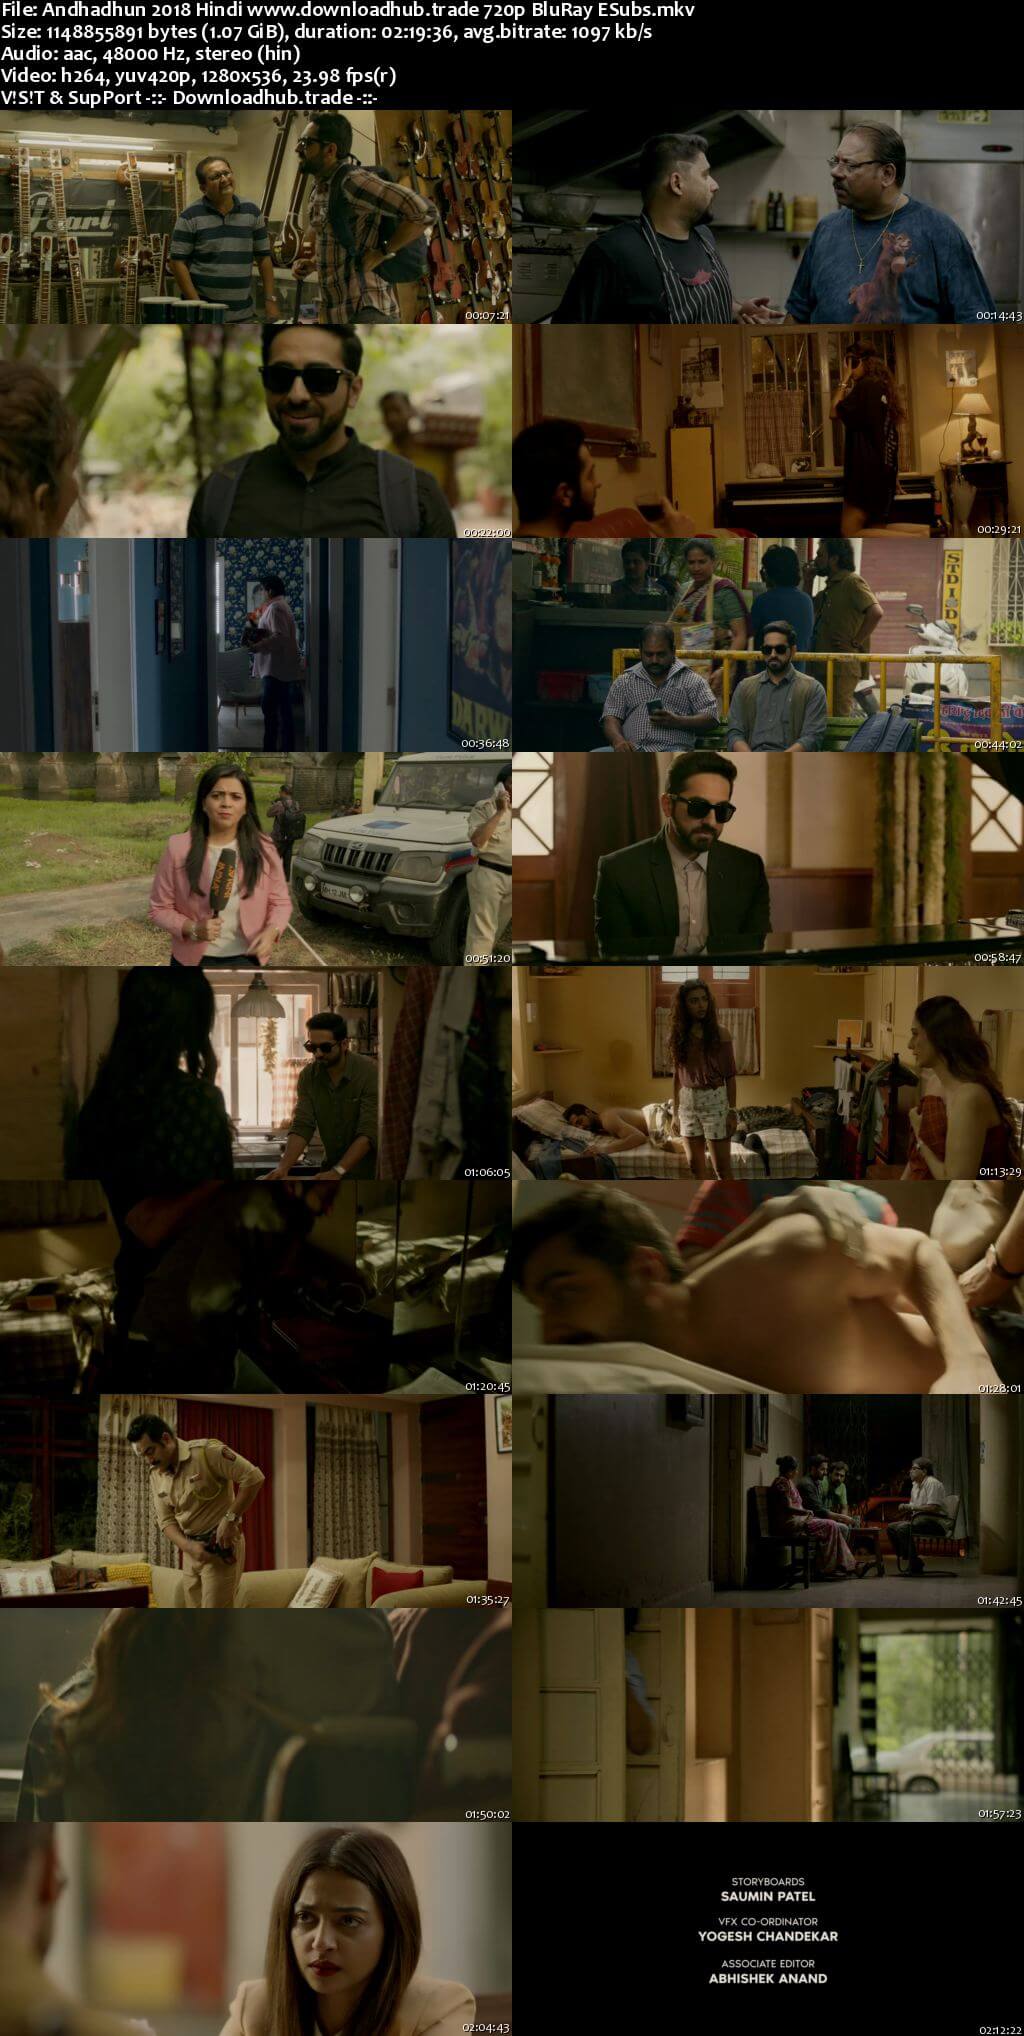 Andhadhun 2018 Hindi 720p BluRay ESubs